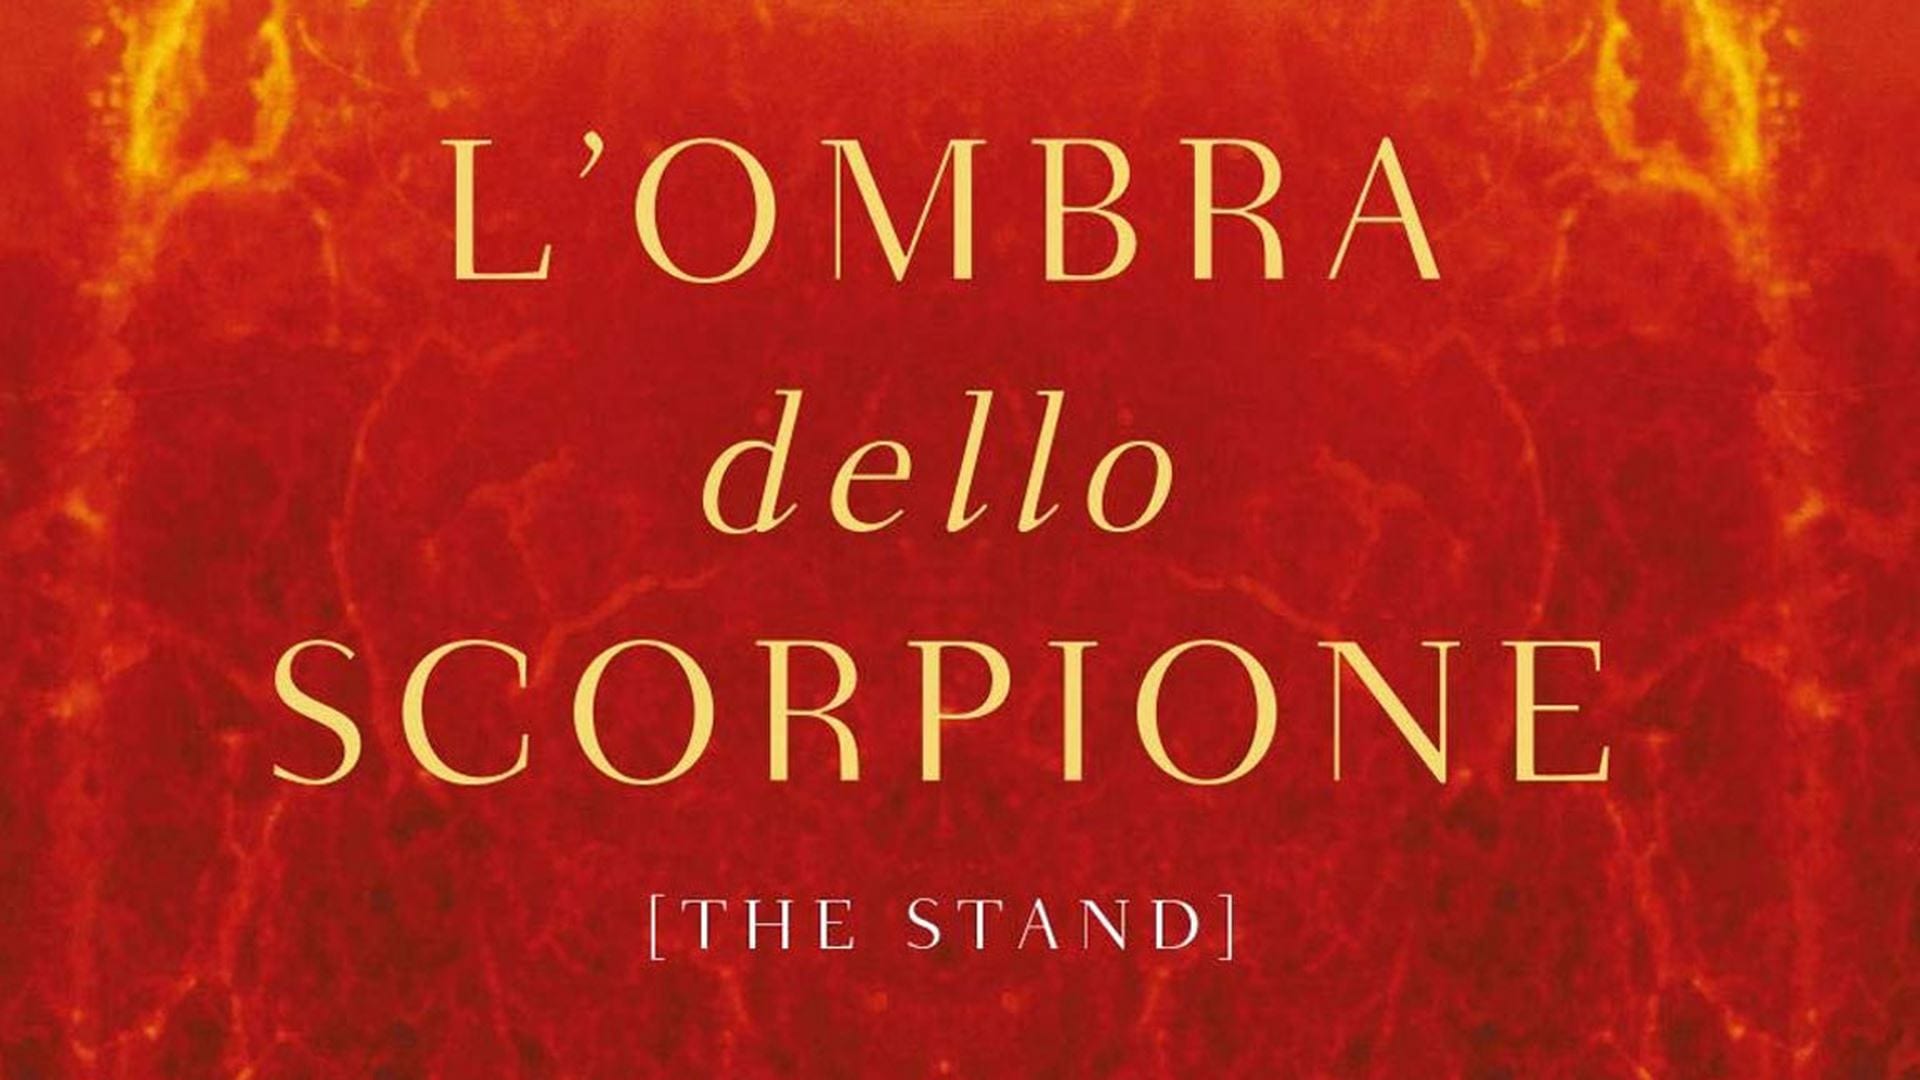 L'Ombra dello Scorpione: Stephen King invita a leggere il capitolo 8